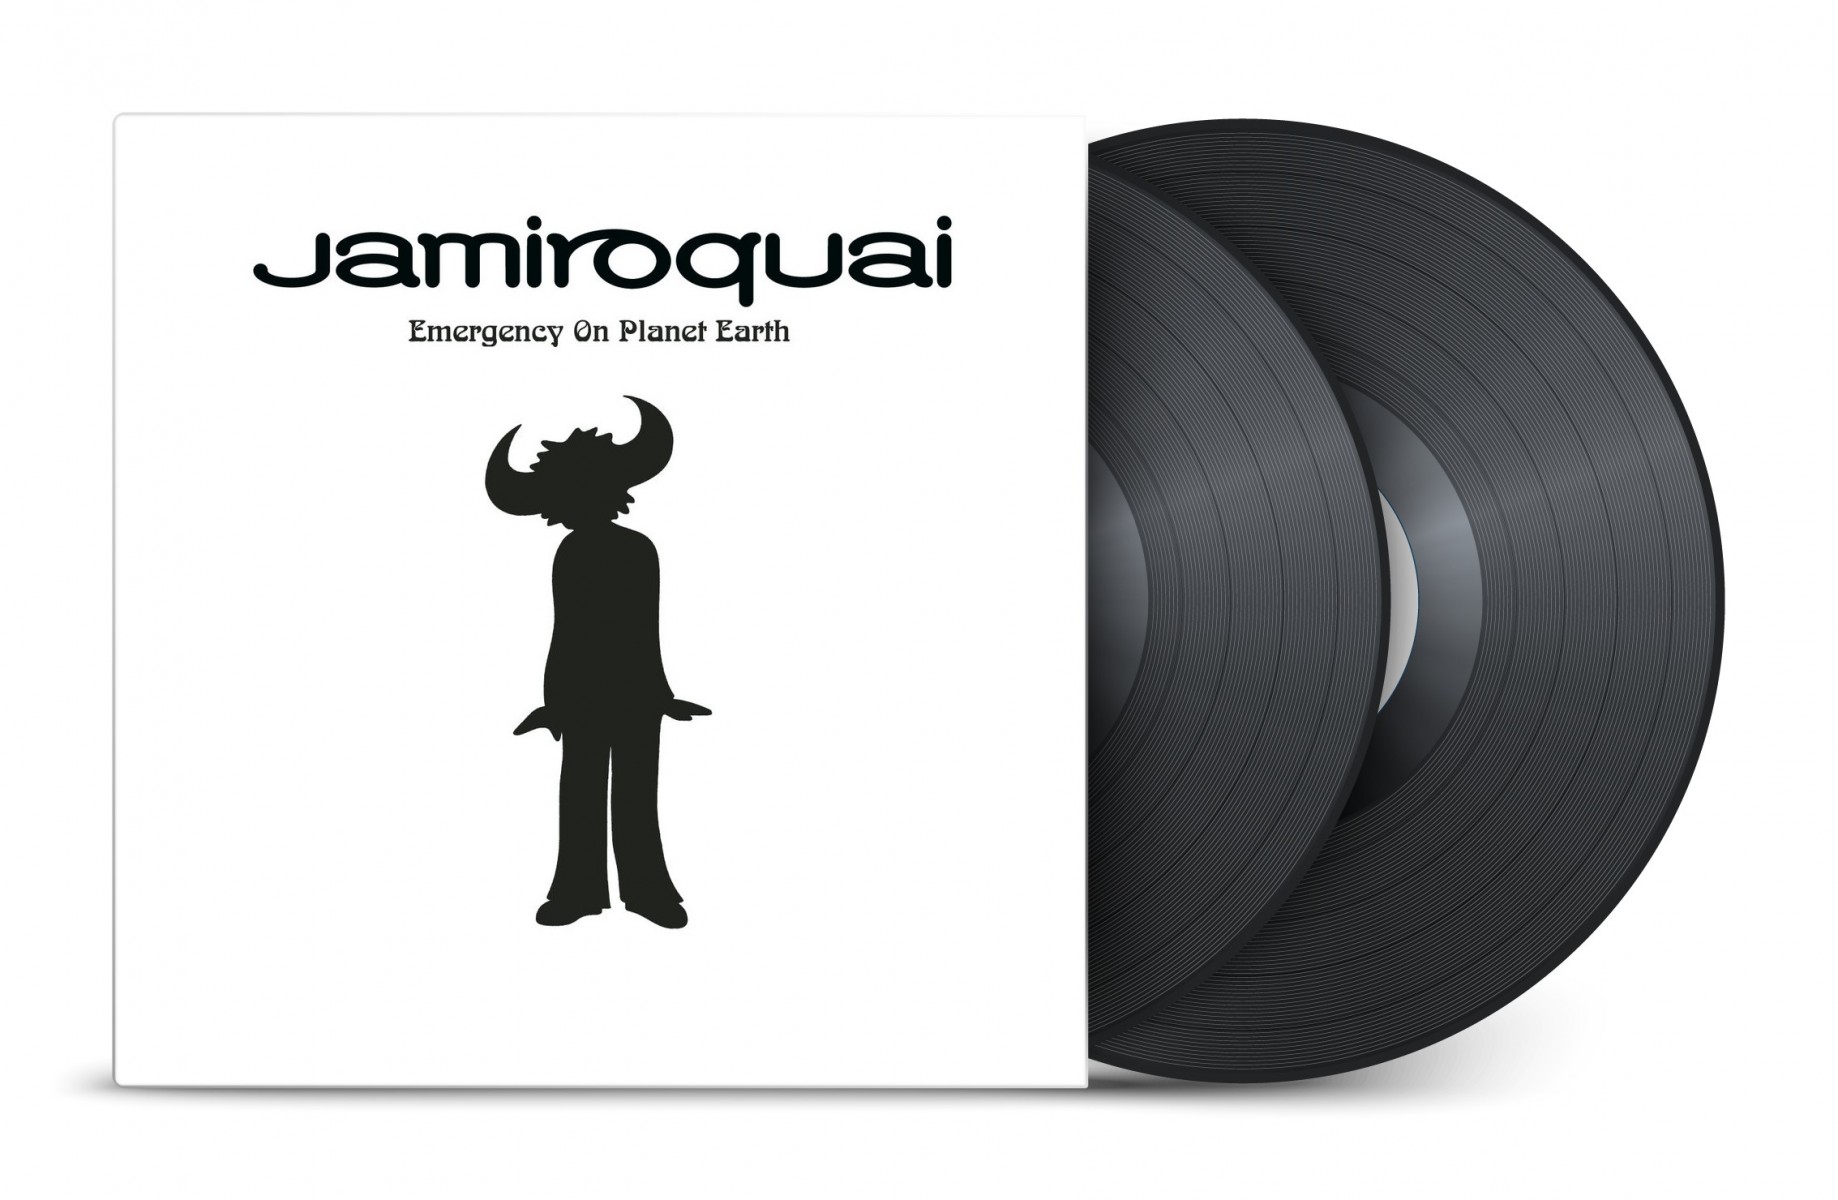 L2ODLT – Le premier album de Jamiroquai a bientôt 30 ans !